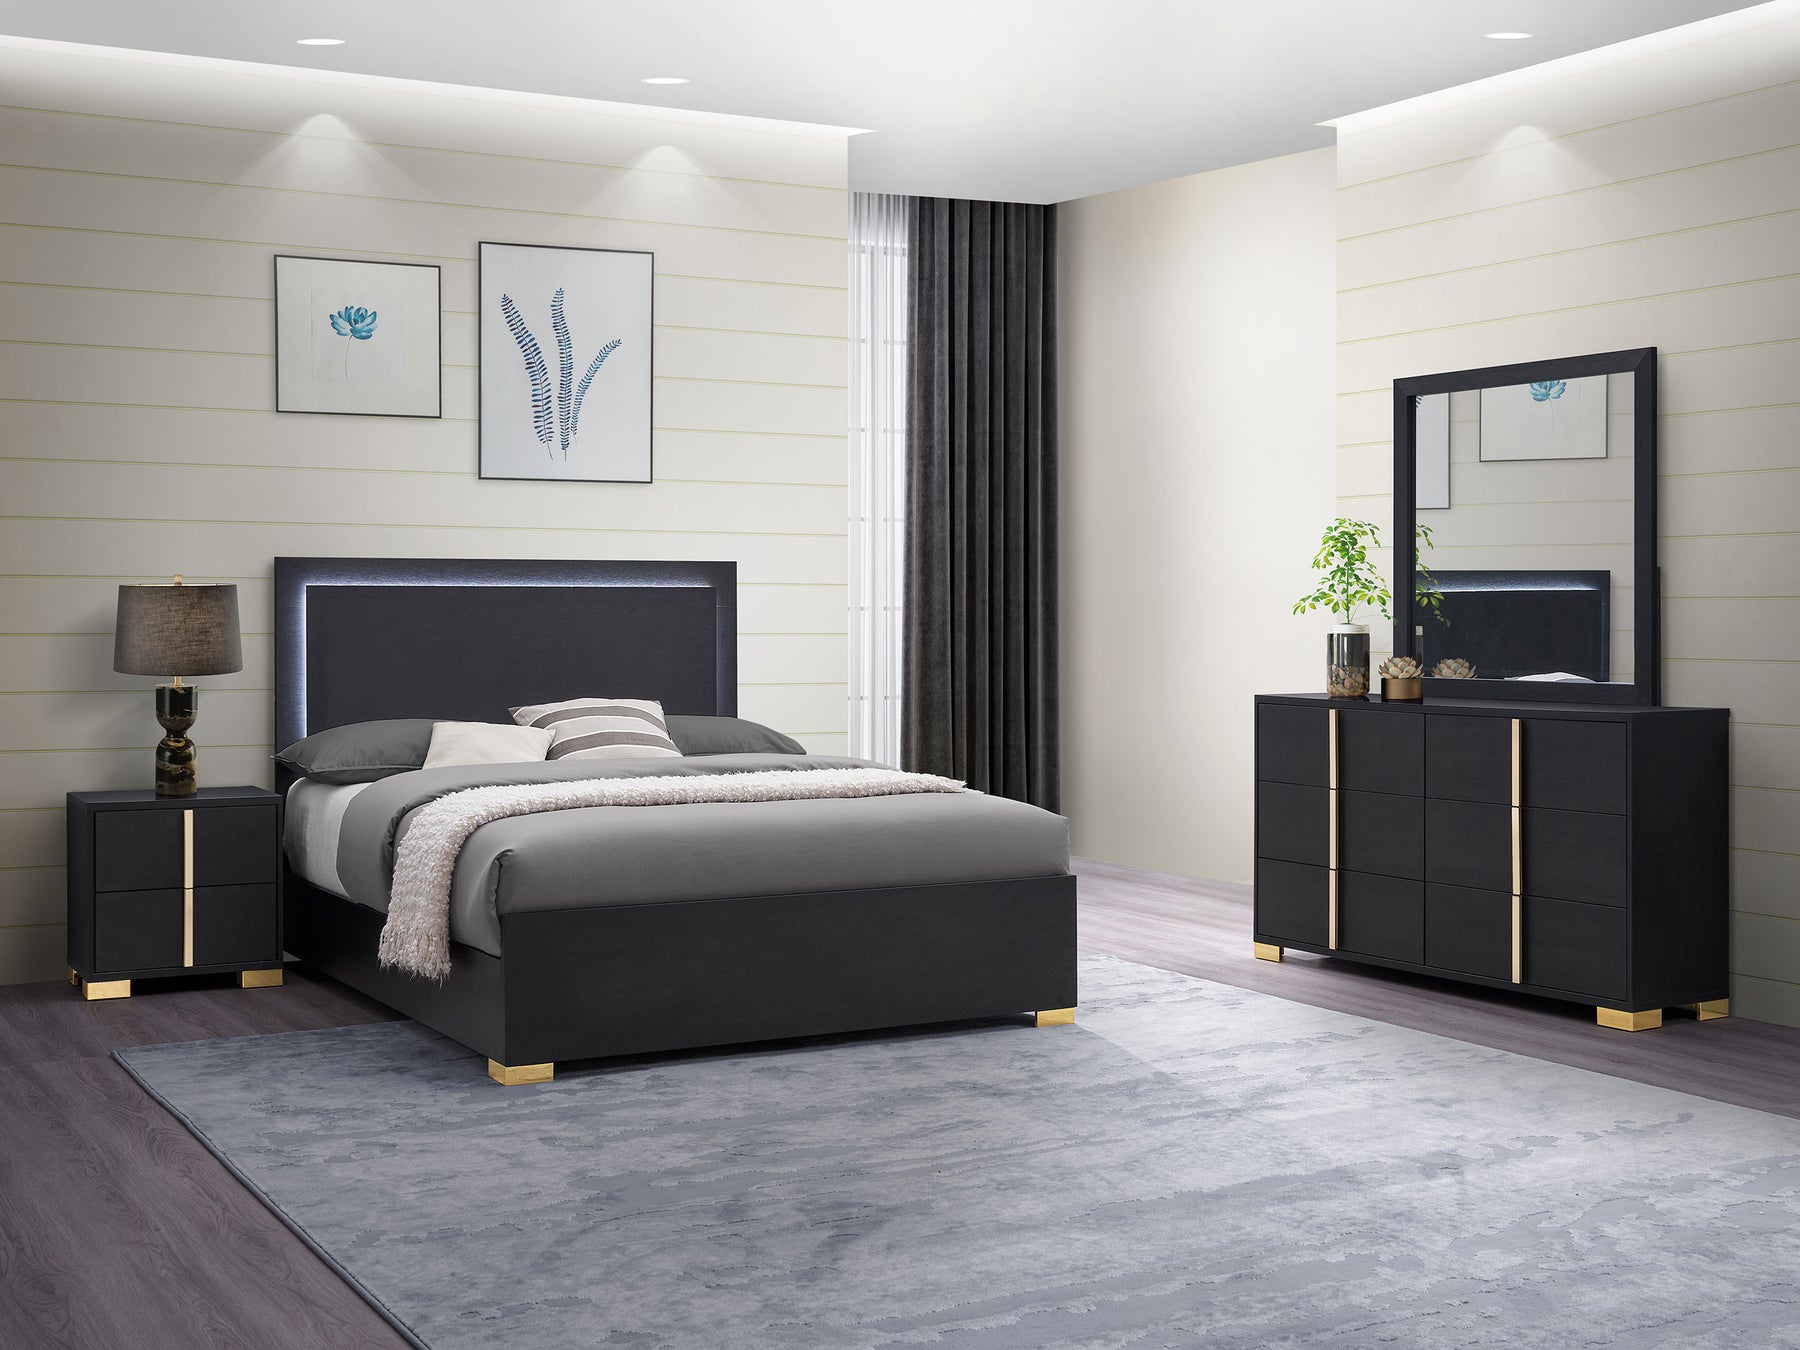 Marceline Youth Bedroom Set - Half Price Furniture